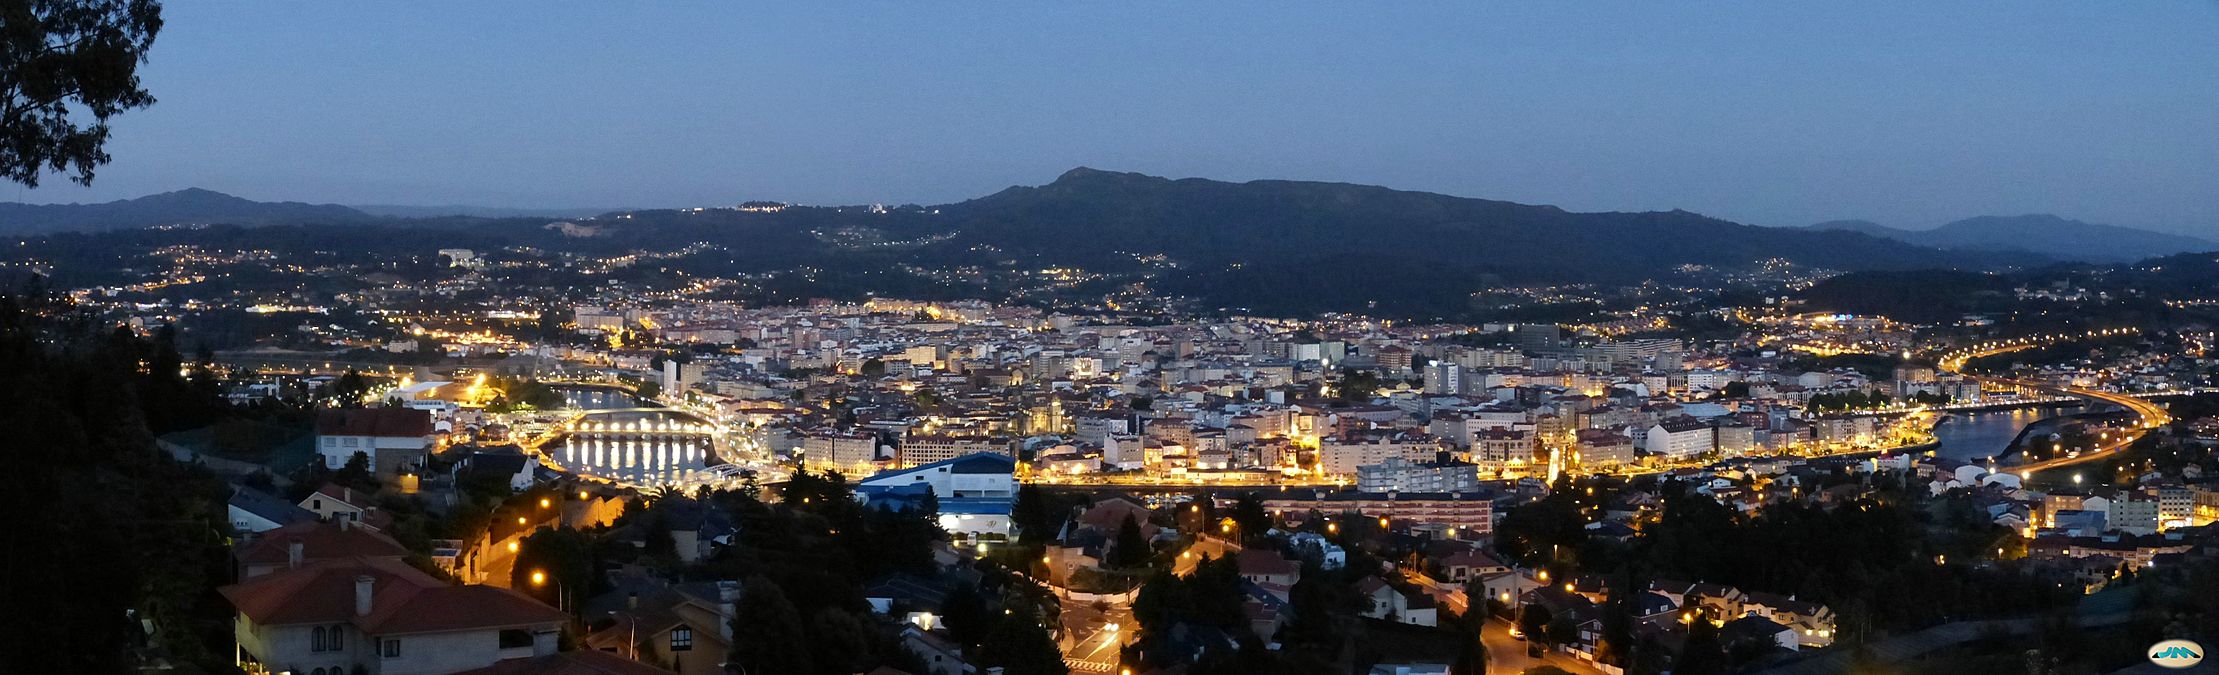 Pontevedra-Panorama de noche (9136213864)